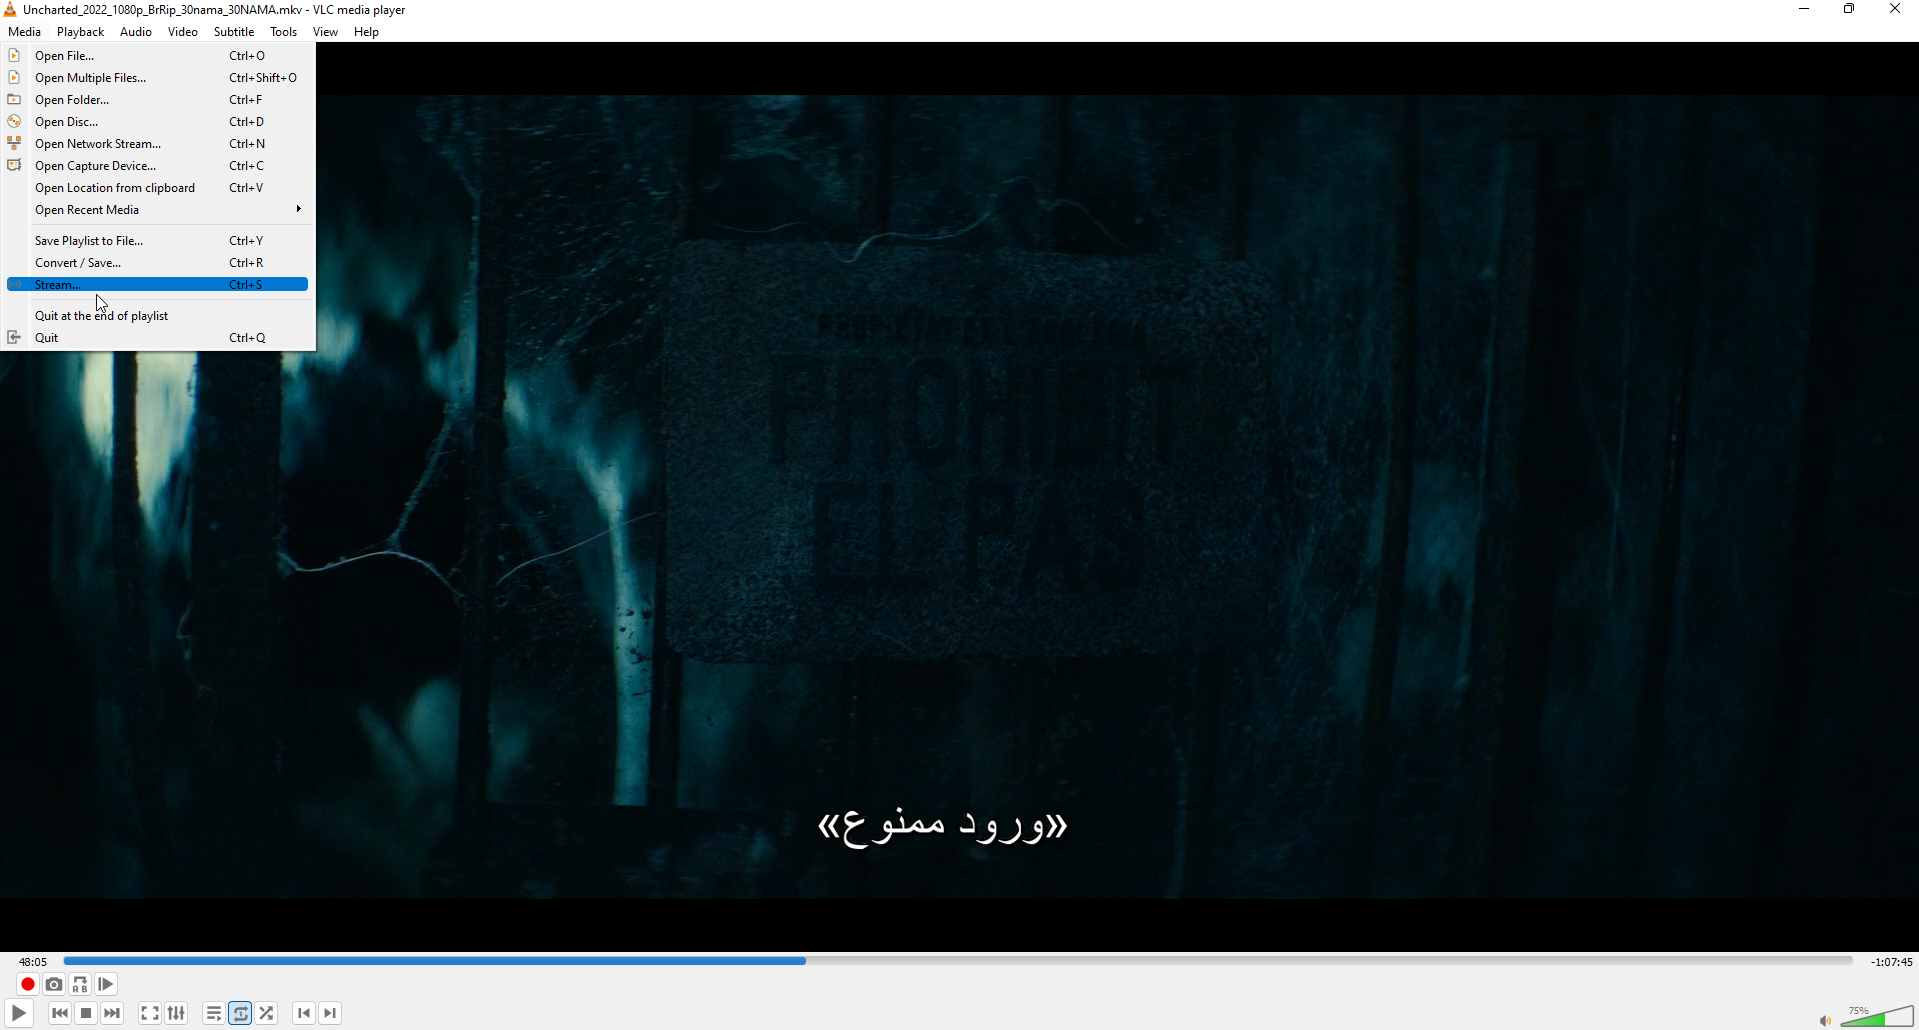 فیلمی که با زیرنویس فارسی در VLC در حال پخش است